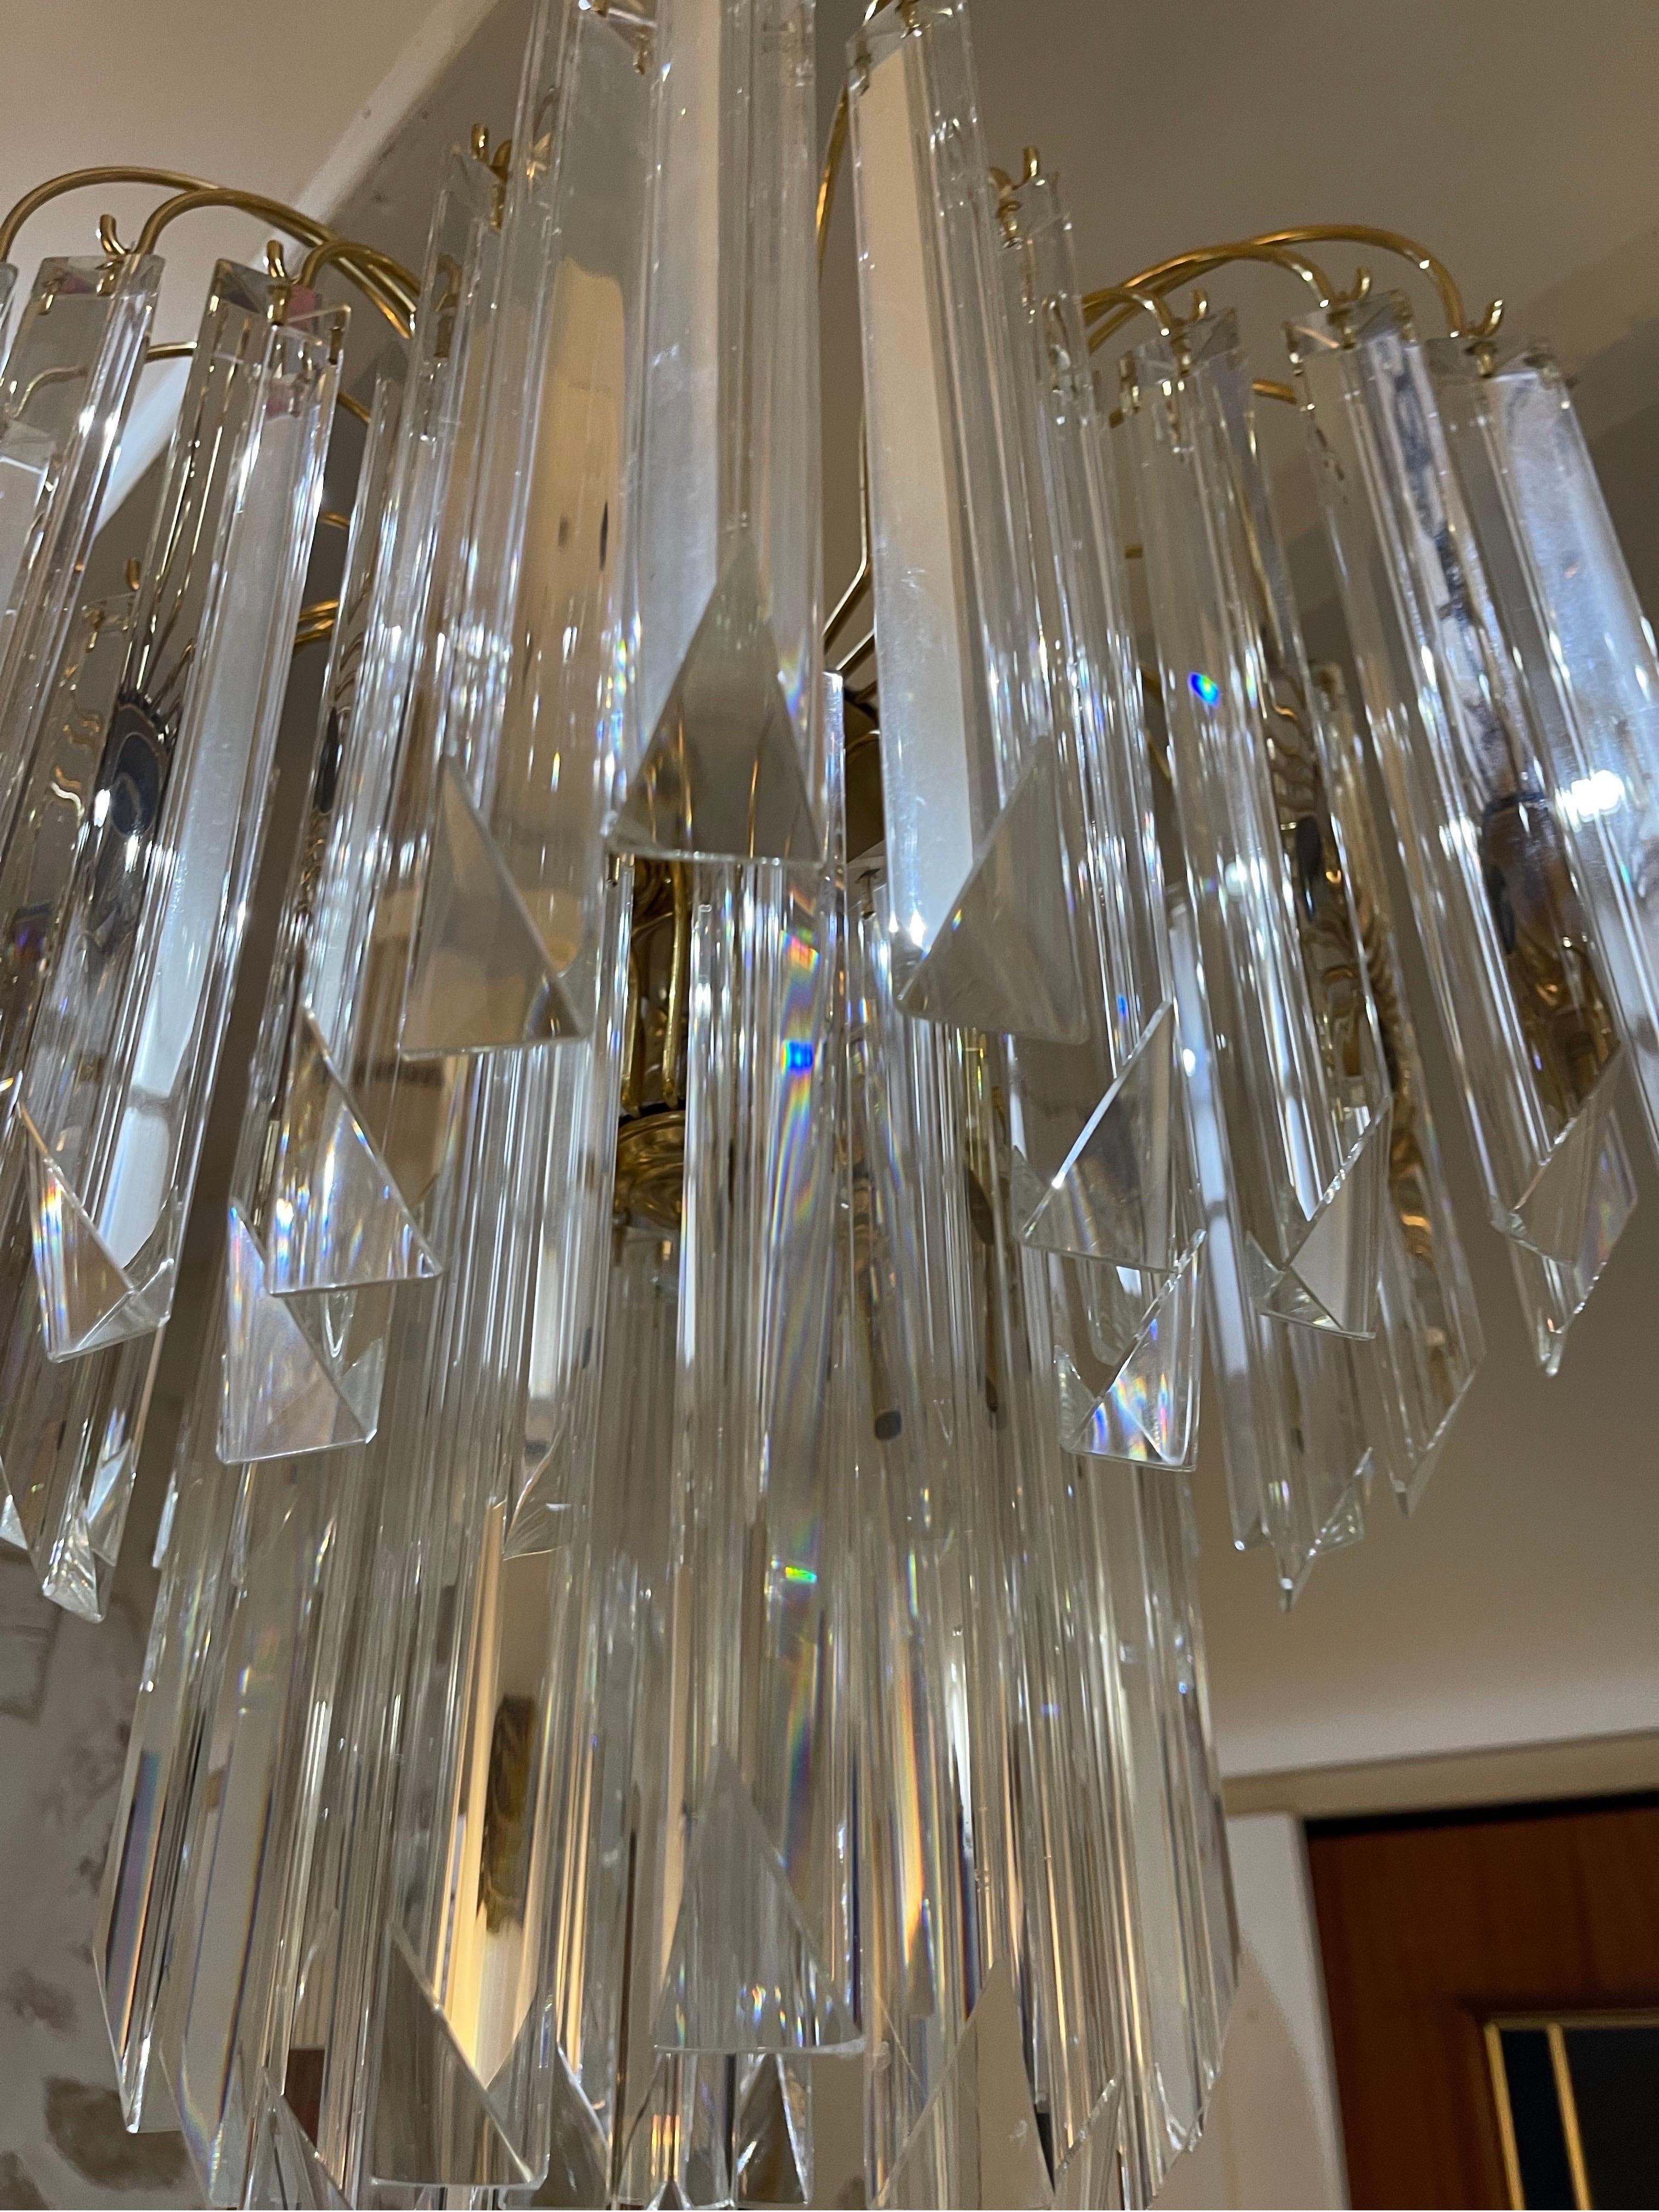 Venini-Kronleuchter mit großem Murano-Glas mit vergoldeter Struktur. Das Design und die Qualität des Glases machen aus diesem Stück das Beste des italienischen Designs.
Dieser einzigartige Kronleuchter von Venini aus Murano-Glas ist